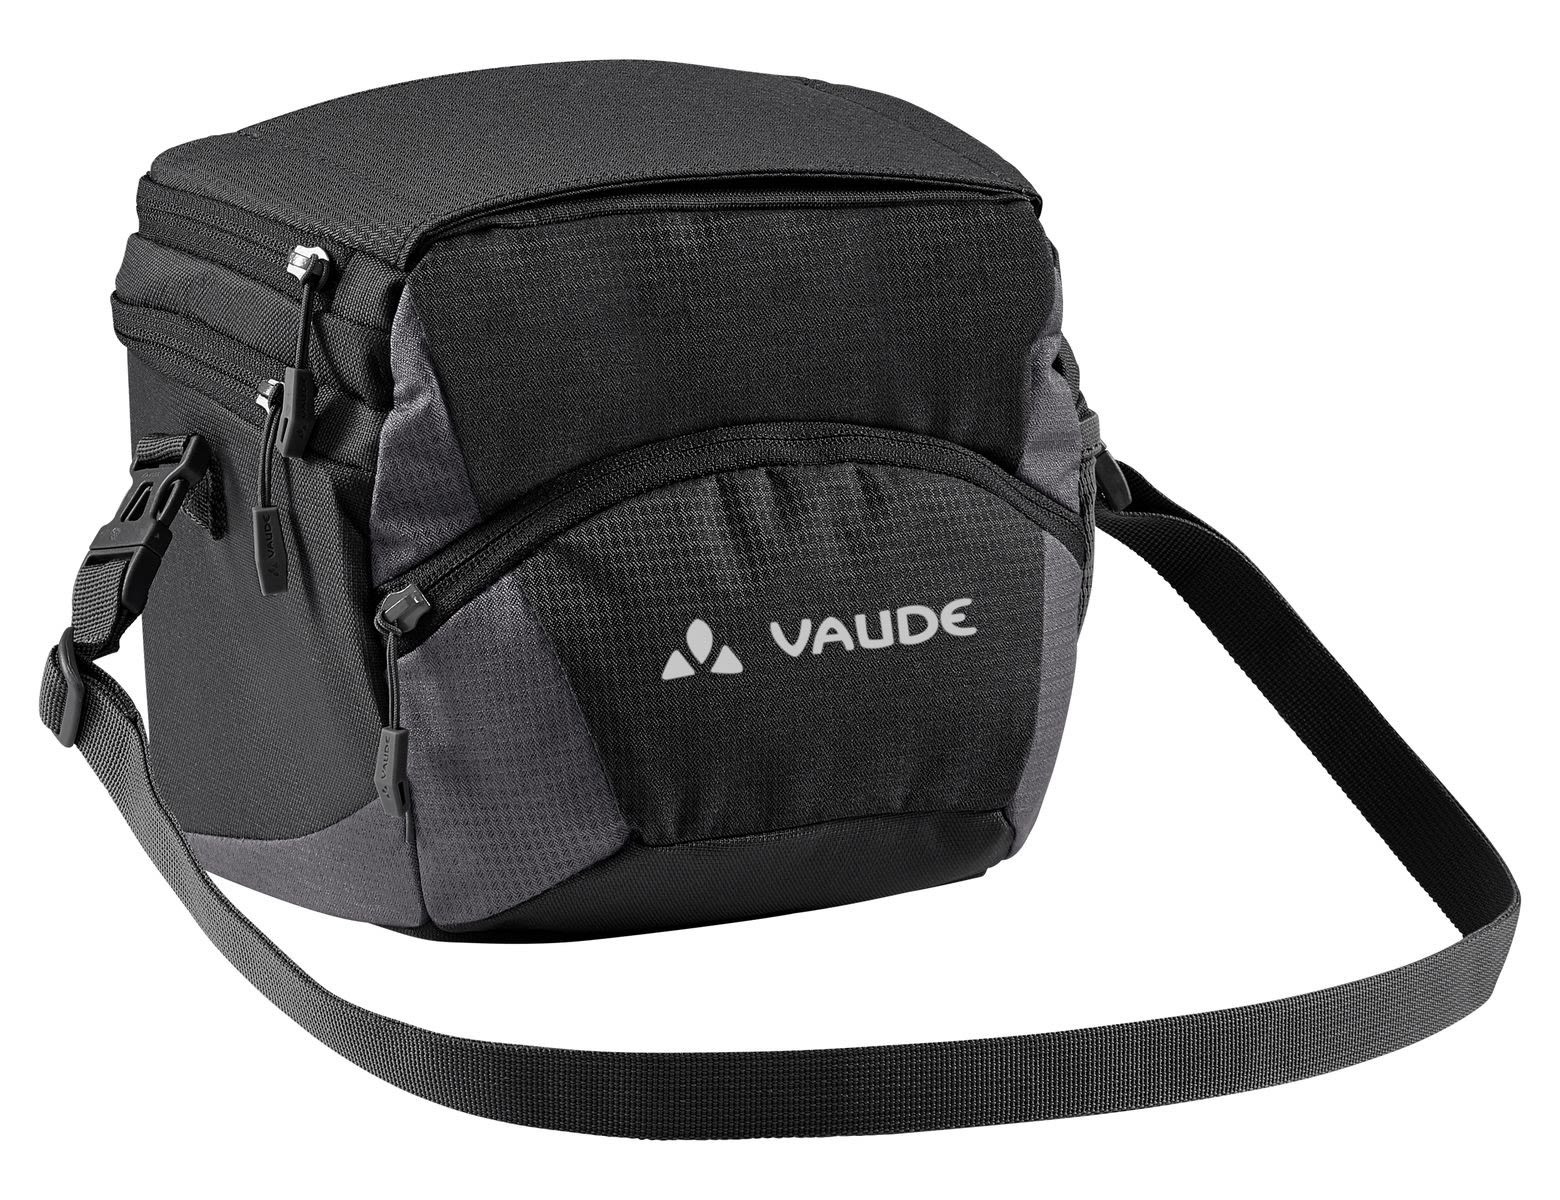 Vaude Ontour BOX (Klickfix Ready) Schwarz- Taschen- Grsse 4l - Farbe Black